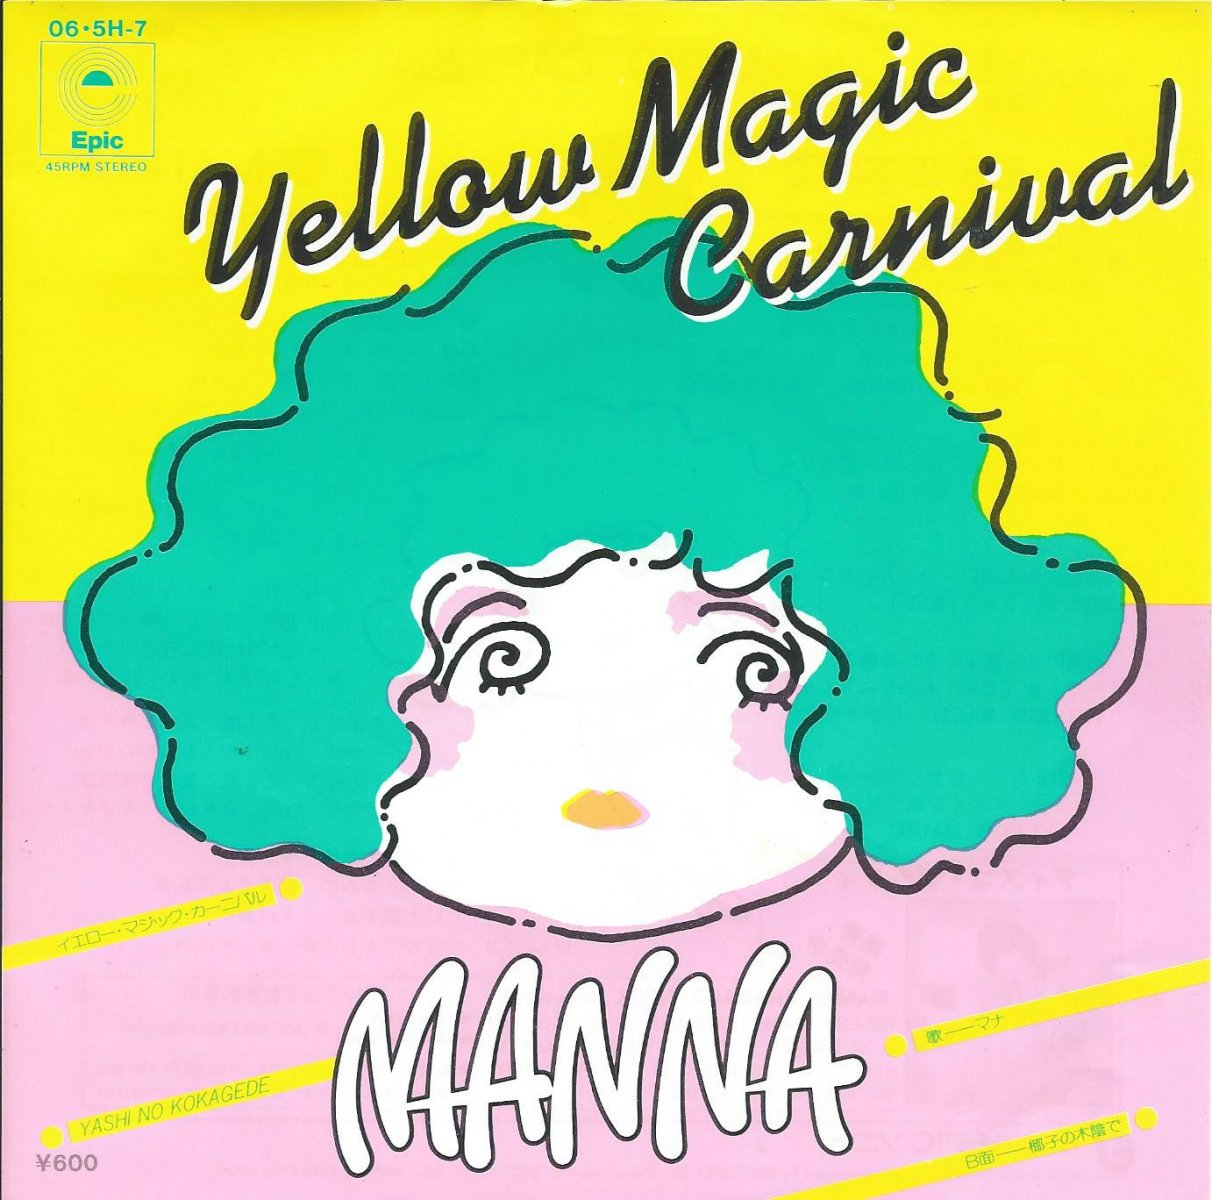 マナ MANNA / イエロー・マジック・カーニバル YELLOW MAGIC CARNIVAL (7) - HIP TANK RECORDS